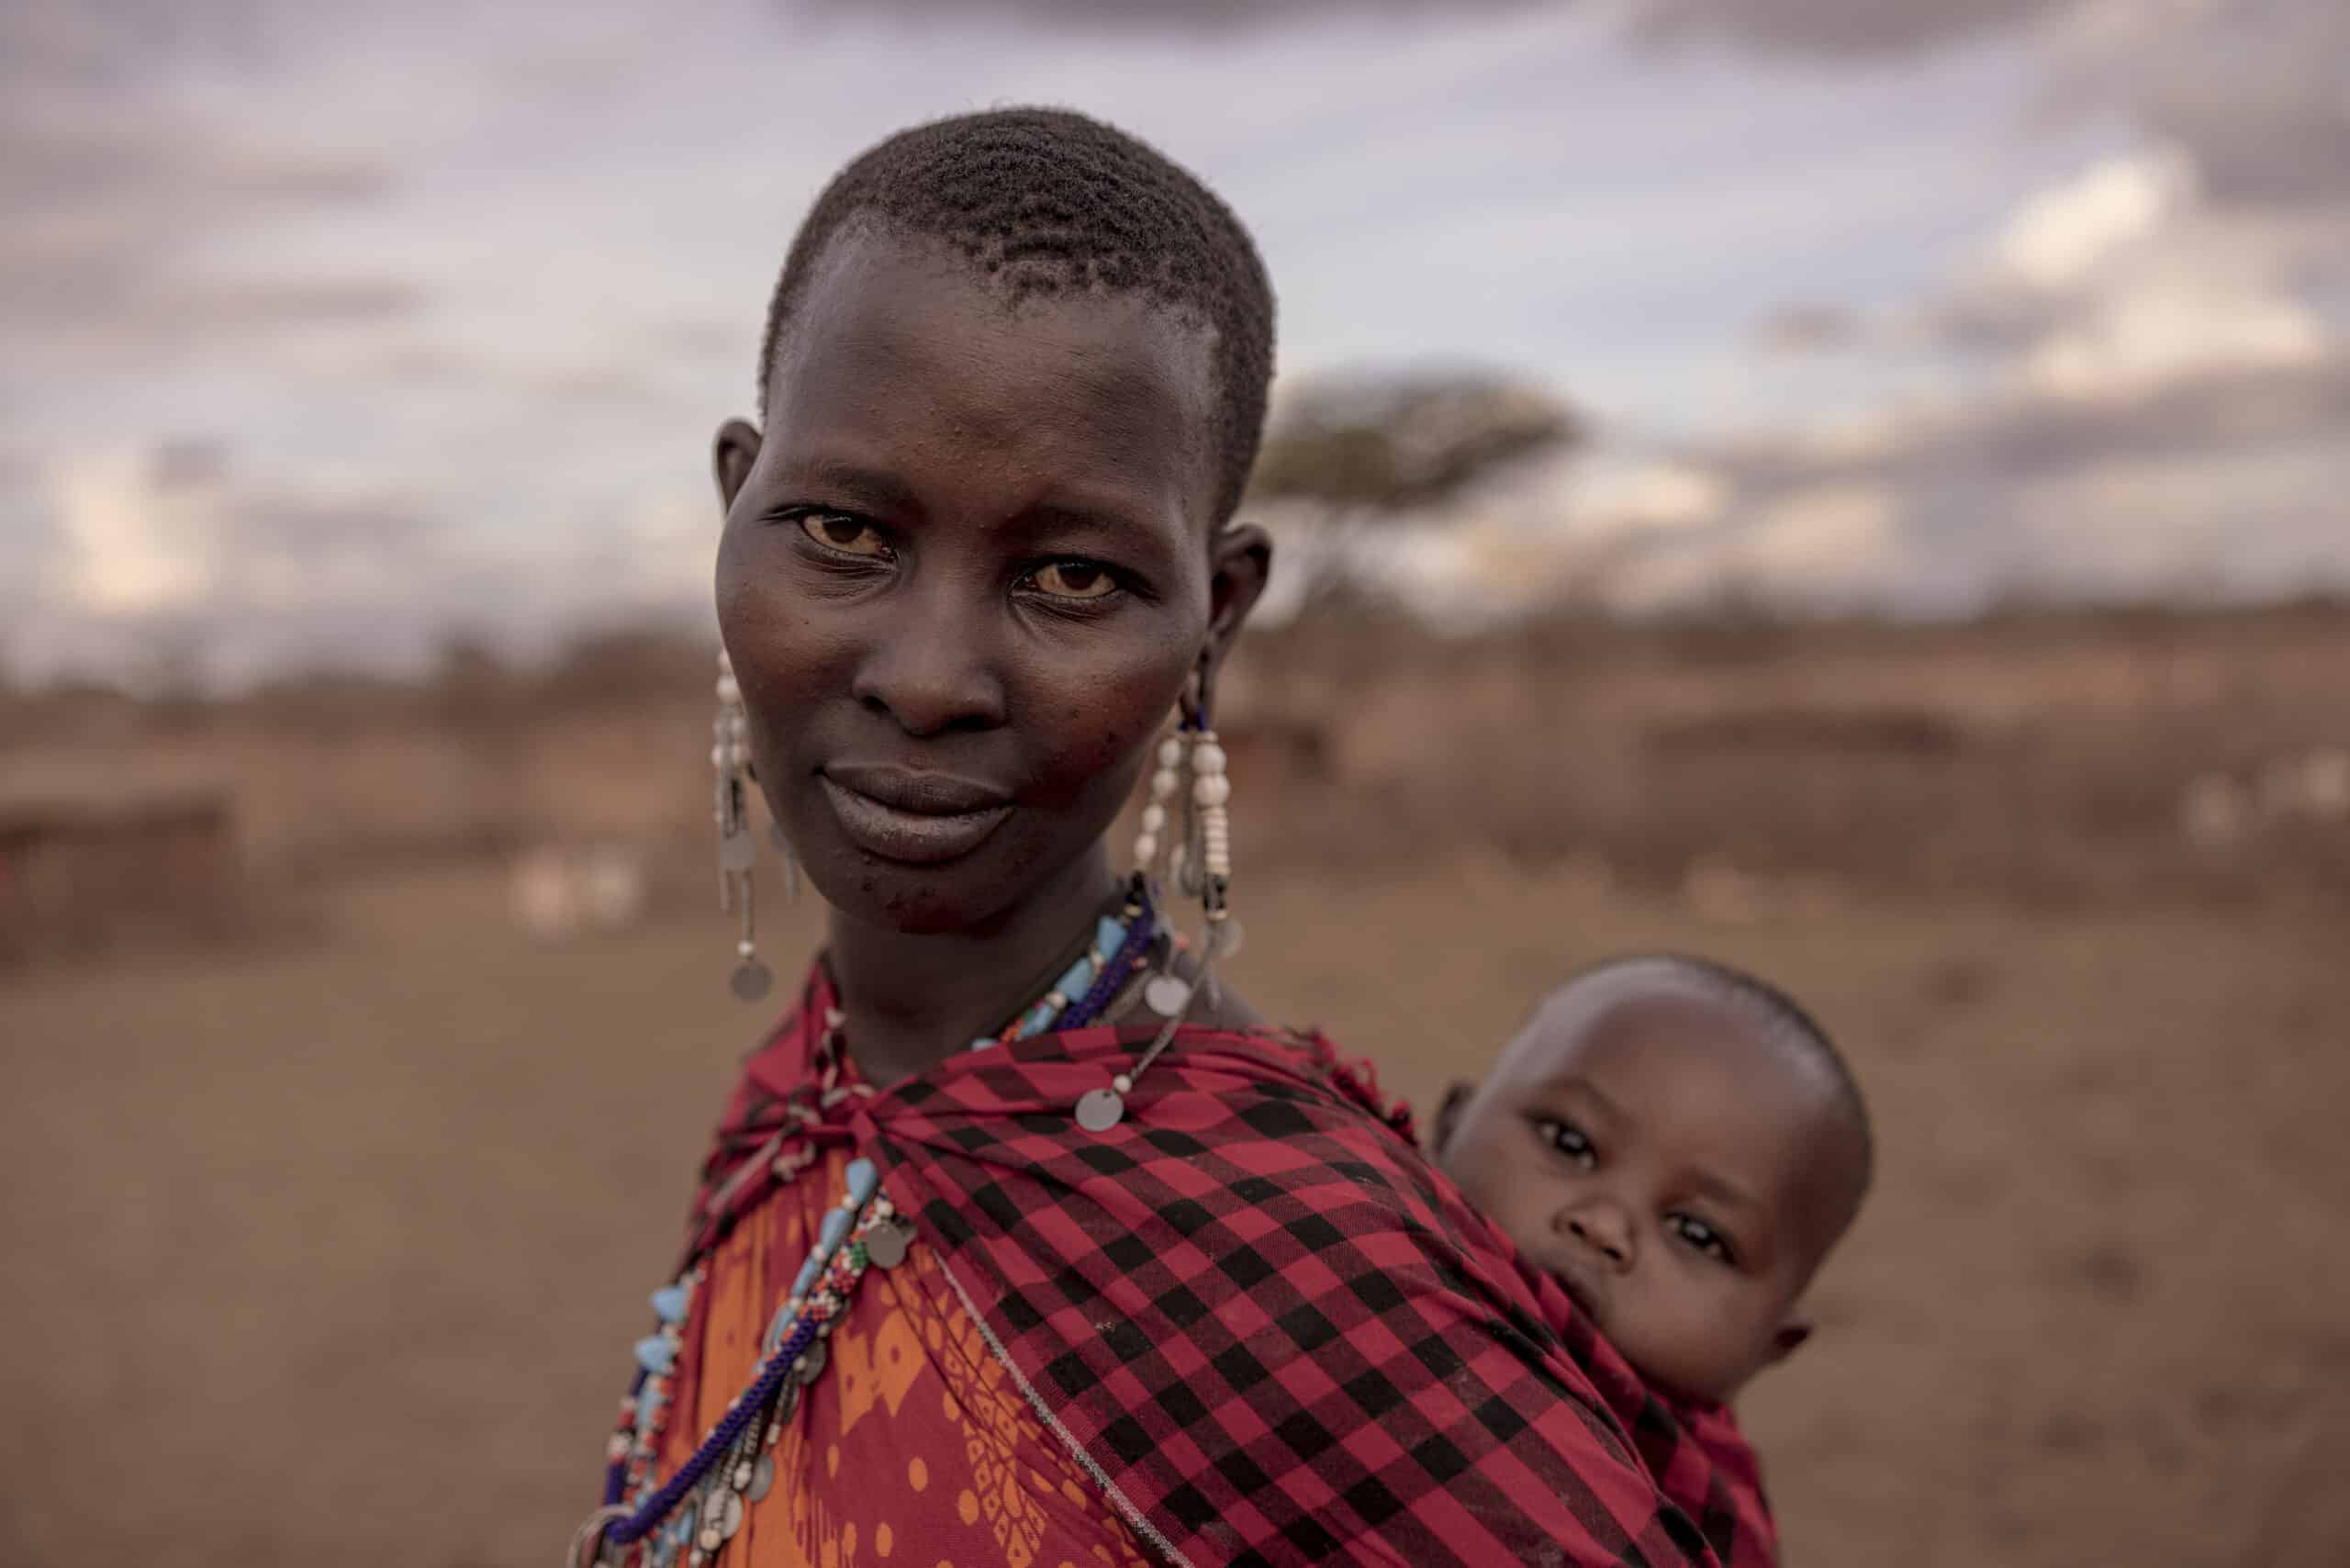 Eine Frau in traditioneller Kleidung mit kunstvollen Ohrringen steht in einer trockenen Landschaft und hält ein Baby, das über ihre Schulter schaut. Beide blicken in die Kamera. © Fotografie Tomas Rodriguez